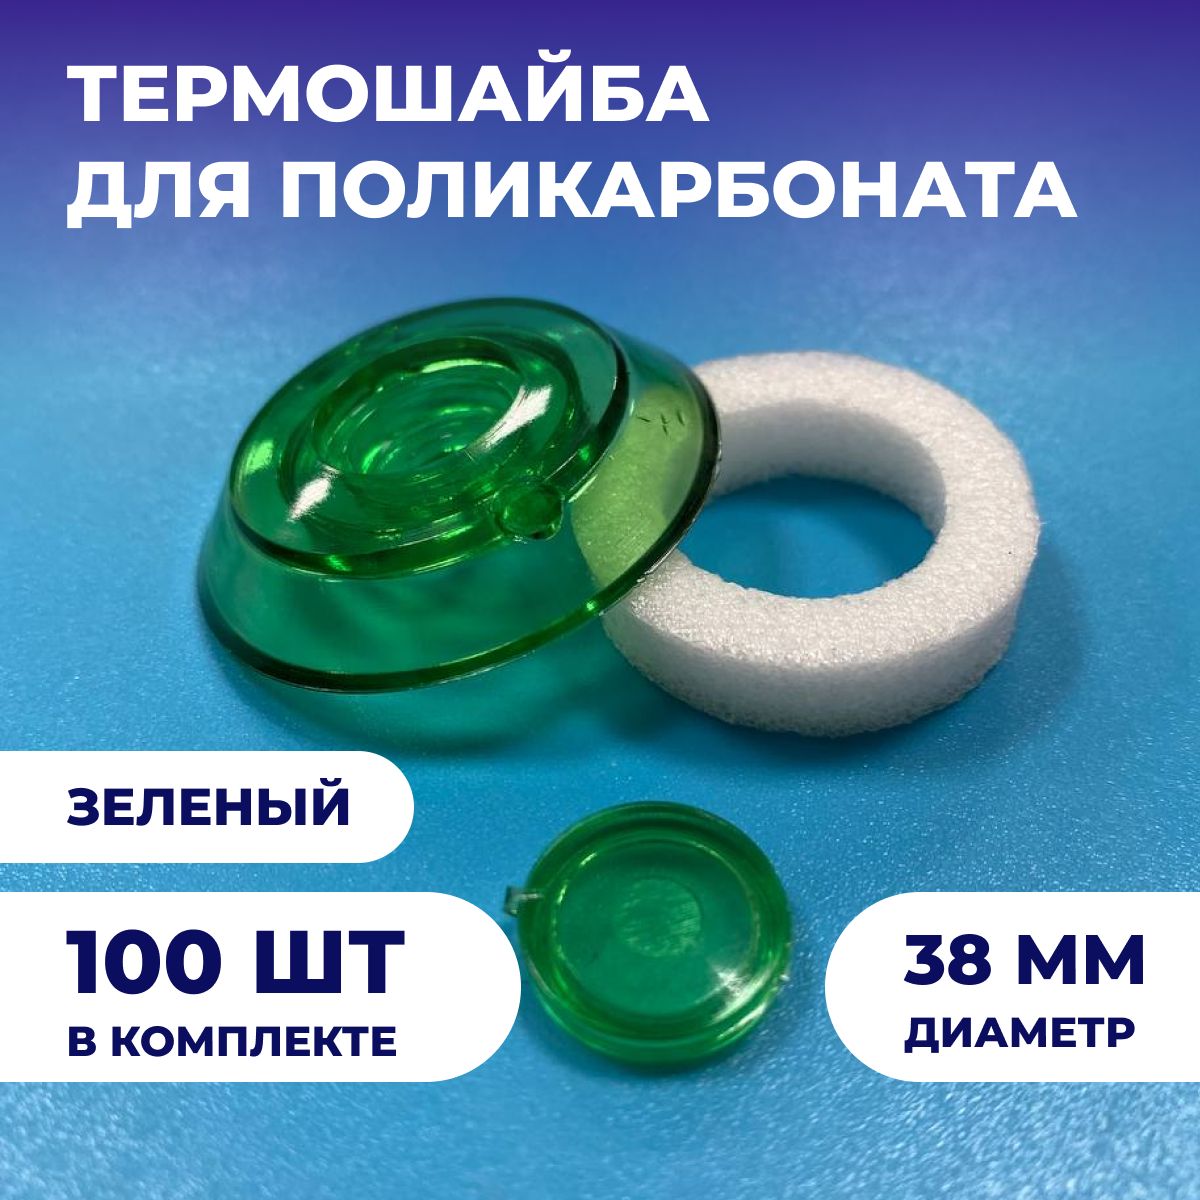 Термошайбаизполикарбоната(100шт),универсальная,диаметр38мм,цвет:Зеленый